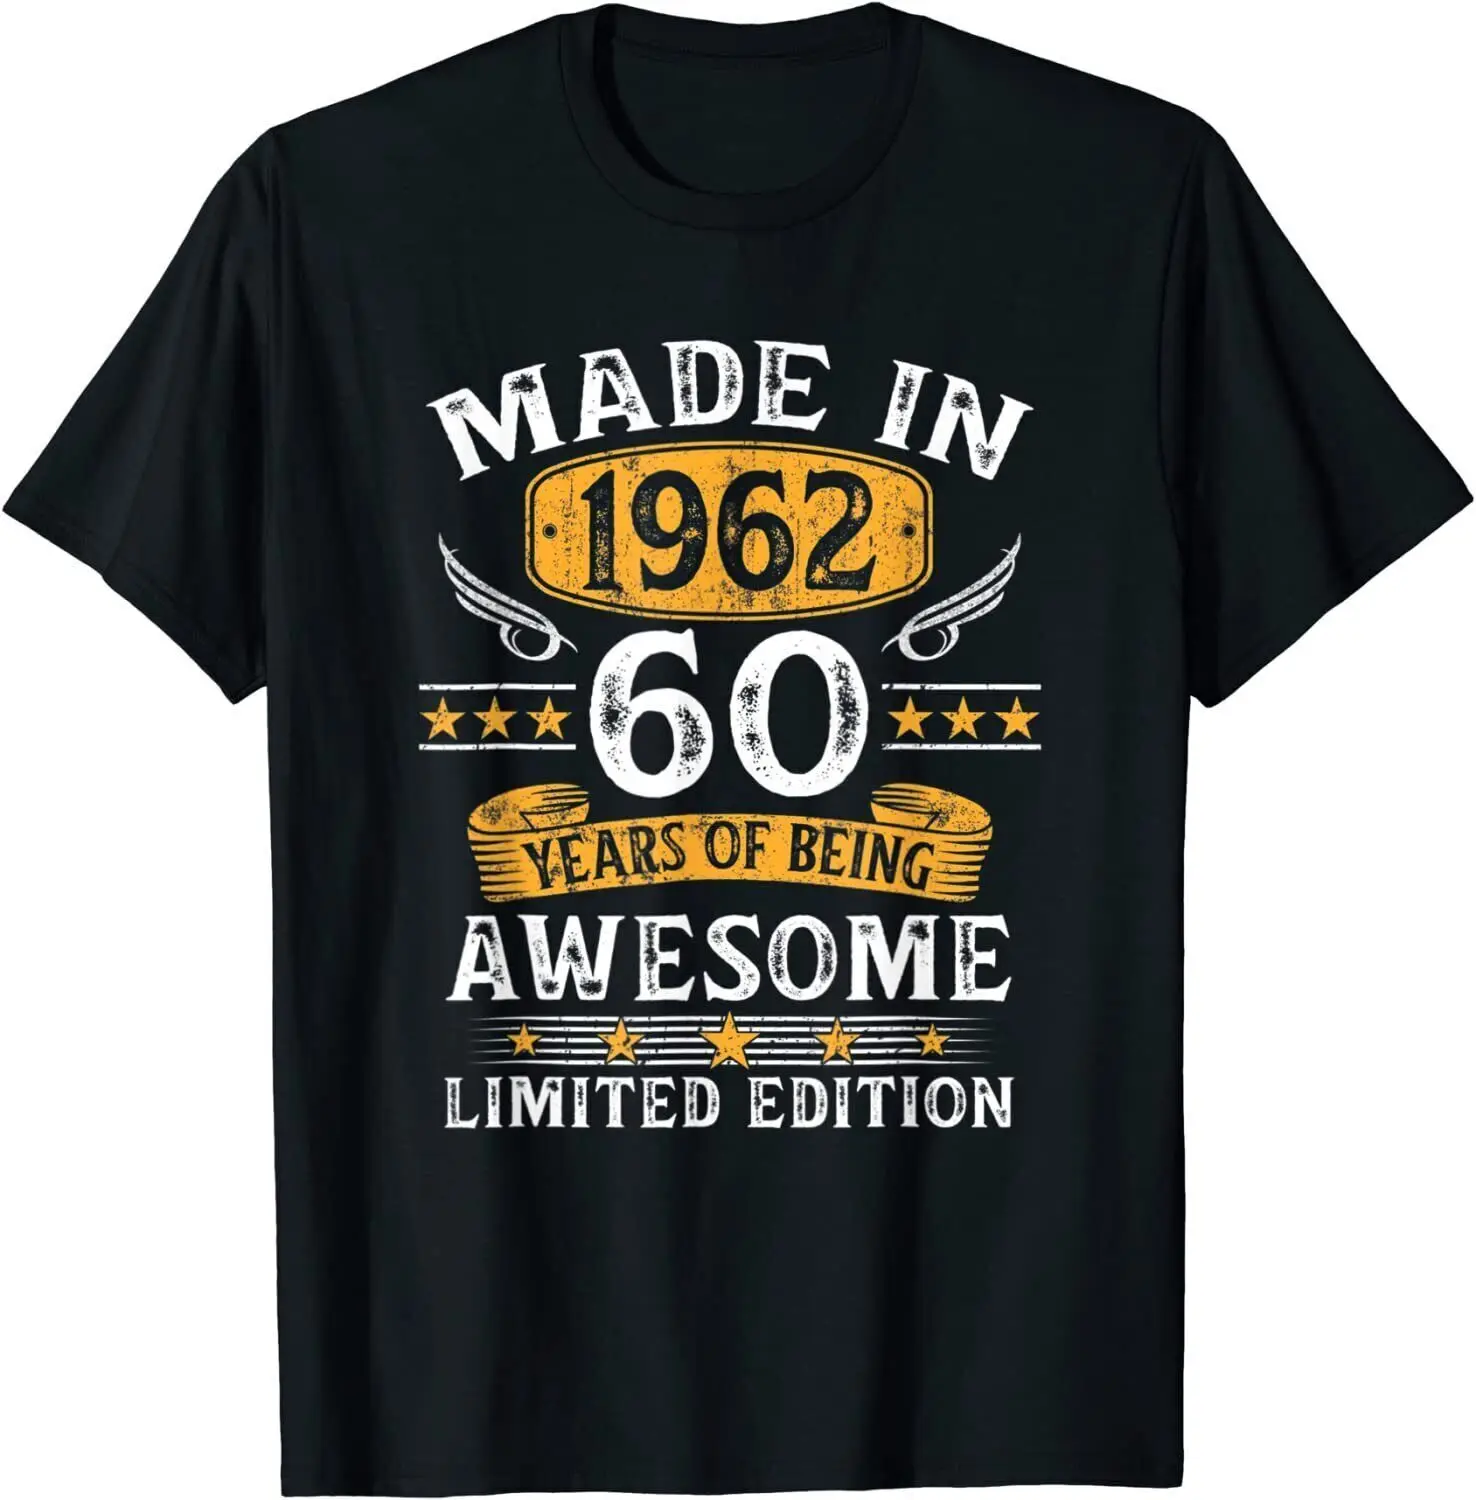 

Сделано в 1962 году, 60 лет, подарки, 60-е мужские модные топы, унисекс футболки, повседневная одежда